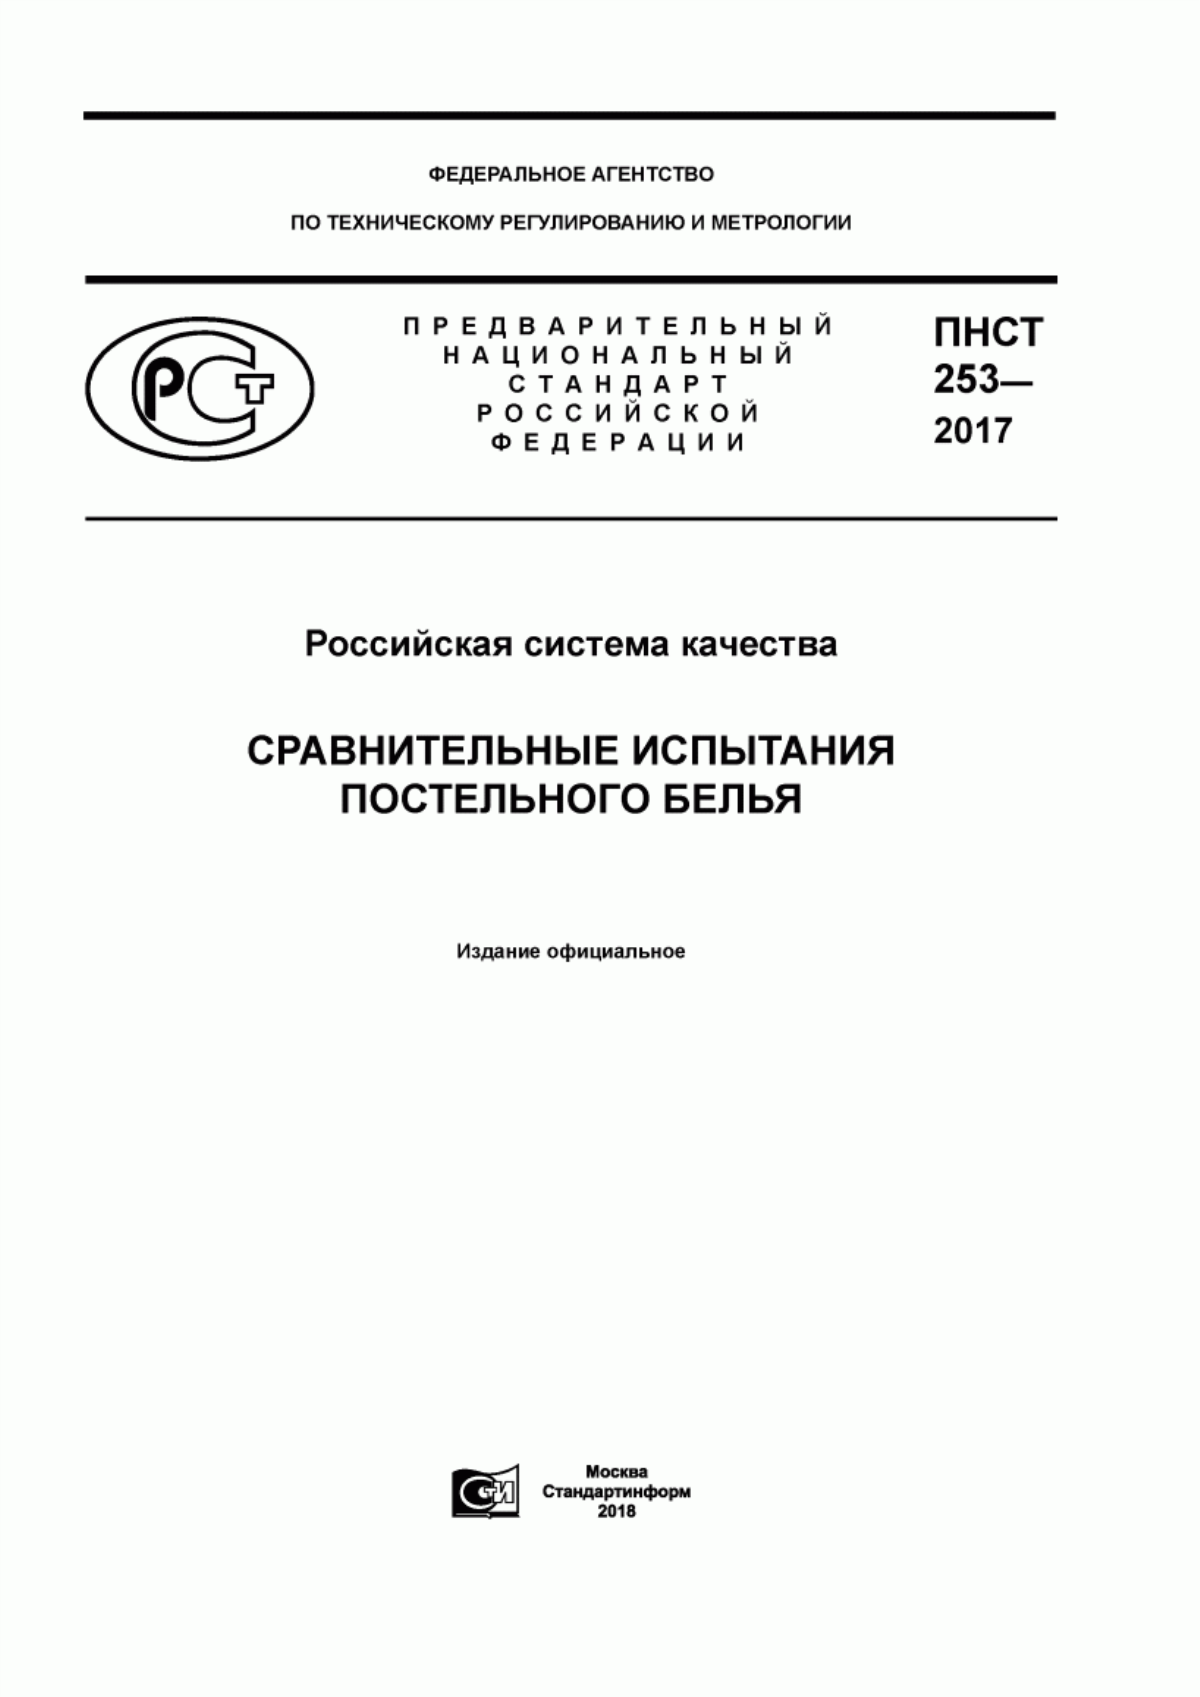 ПНСТ 253-2017 Российская система качества. Сравнительные испытания постельного белья